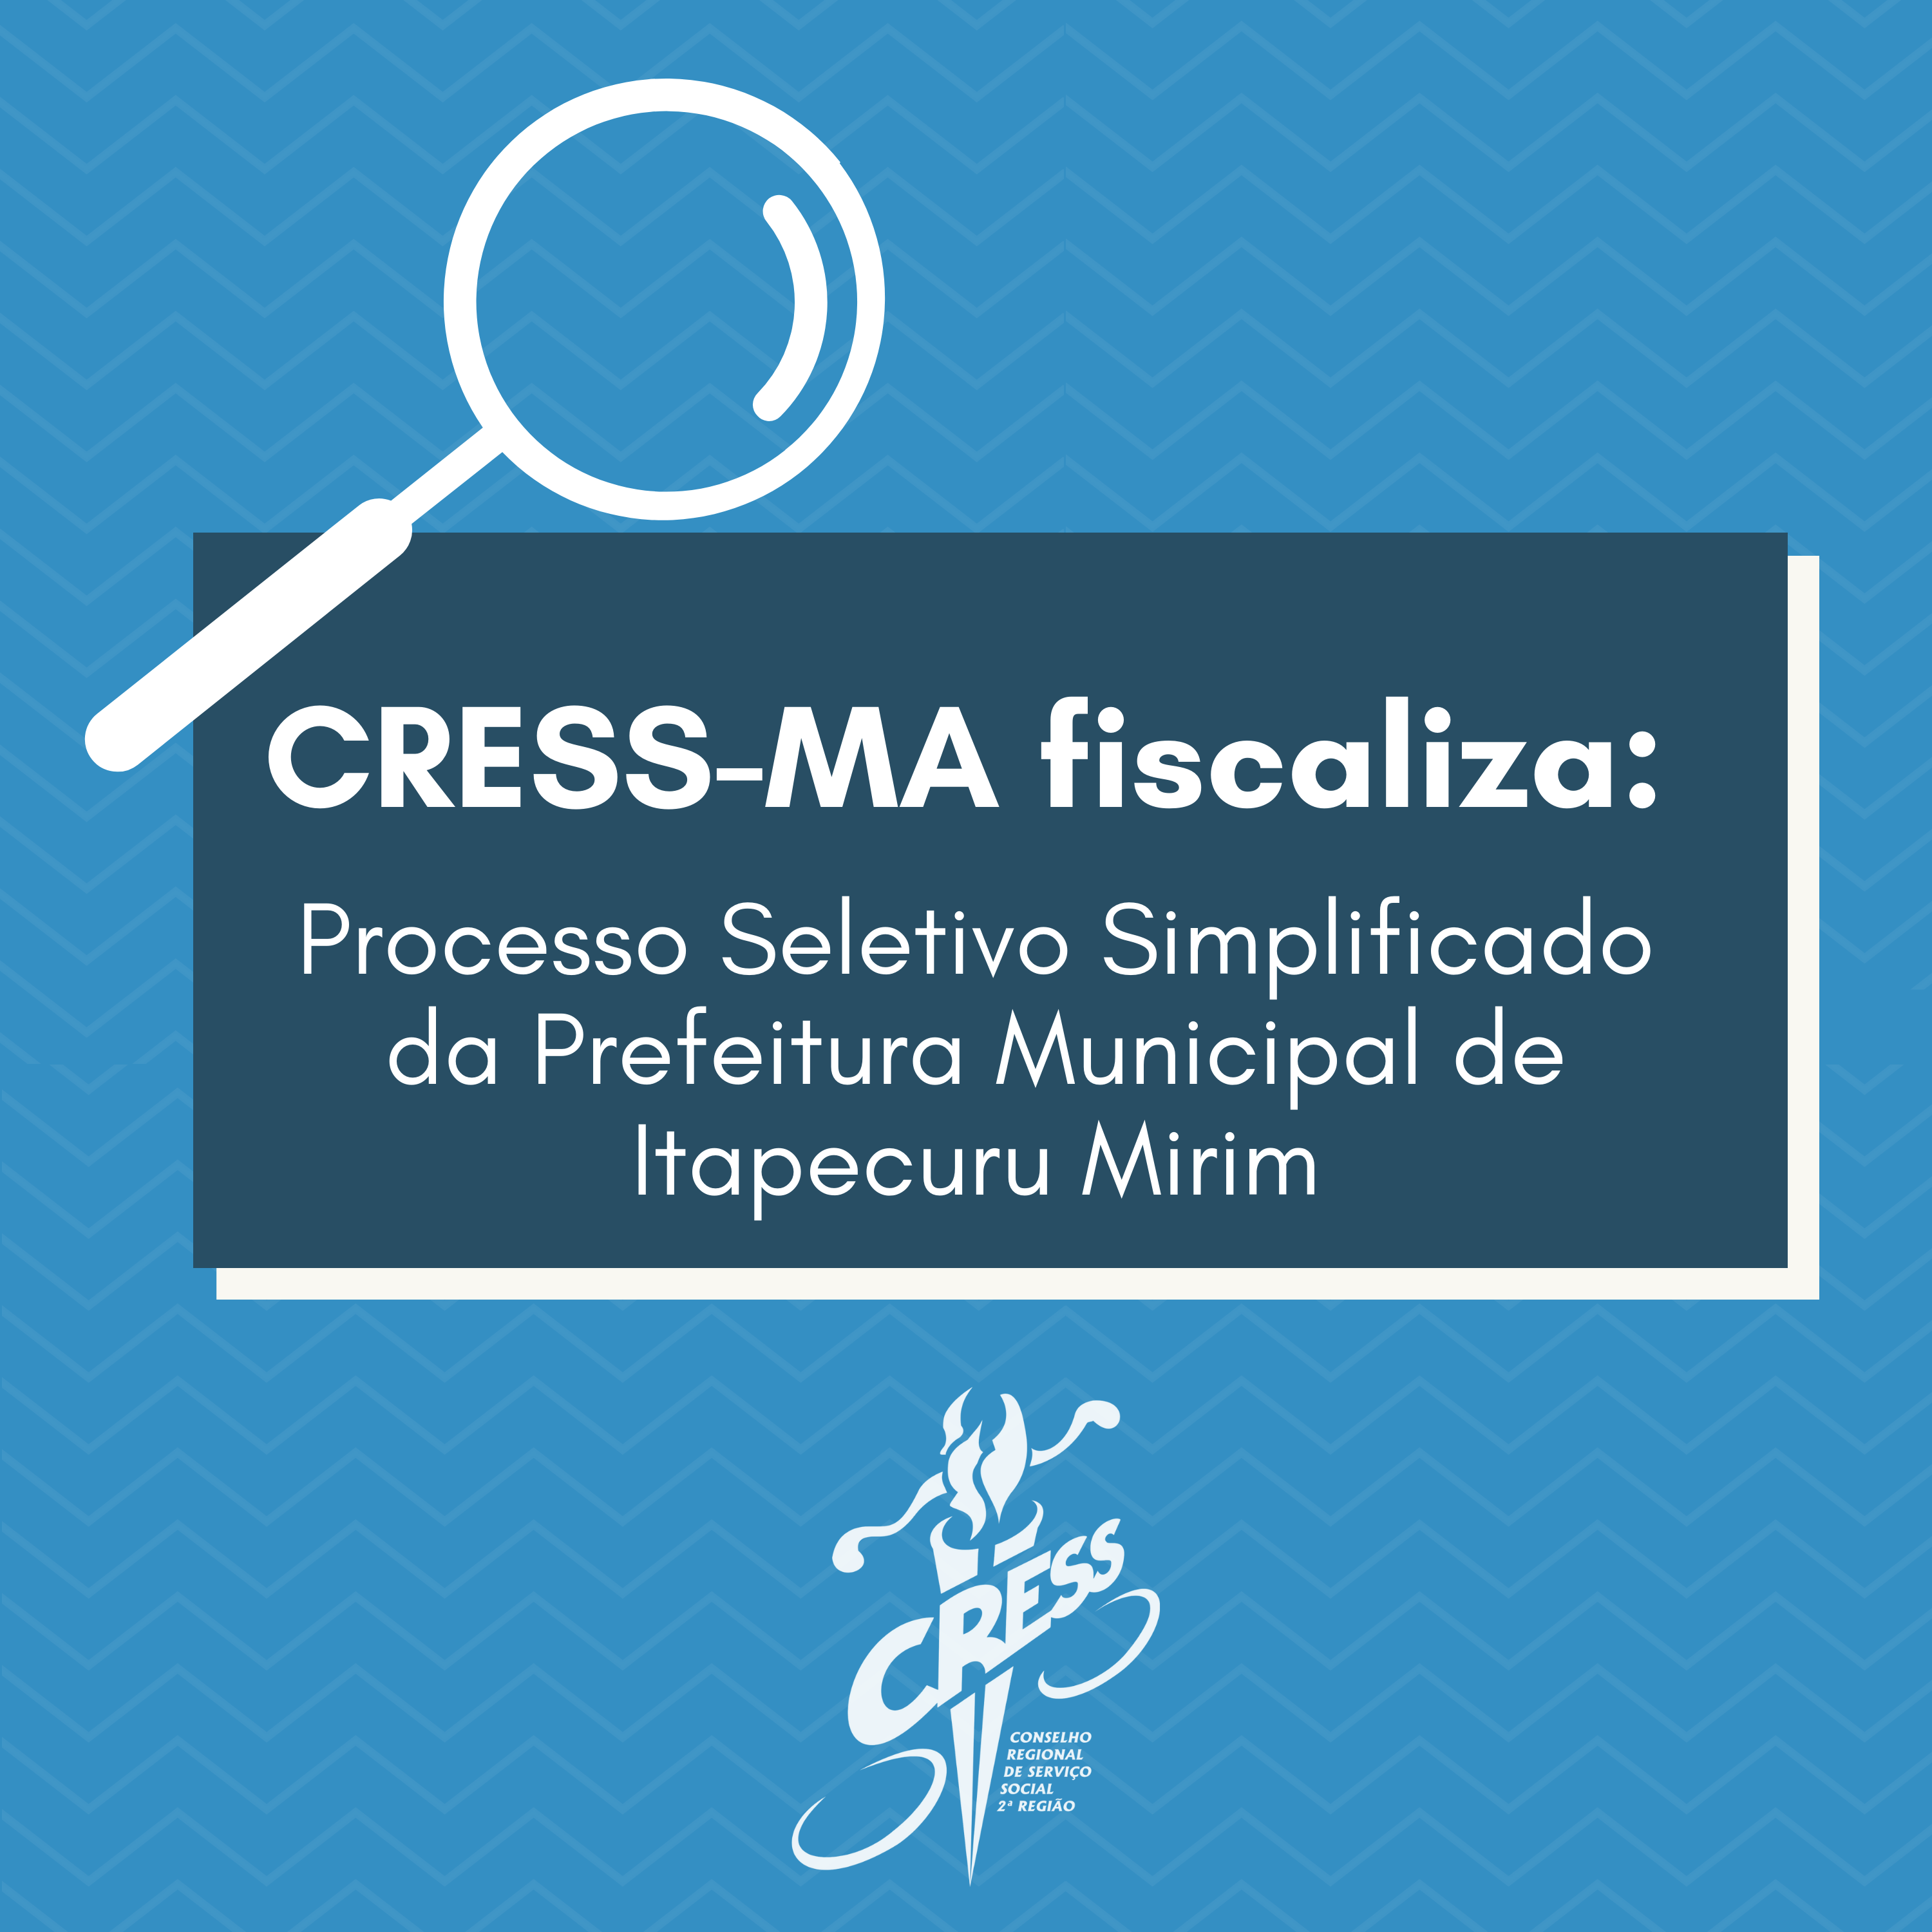 CRESS-MA fiscaliza processo seletivo